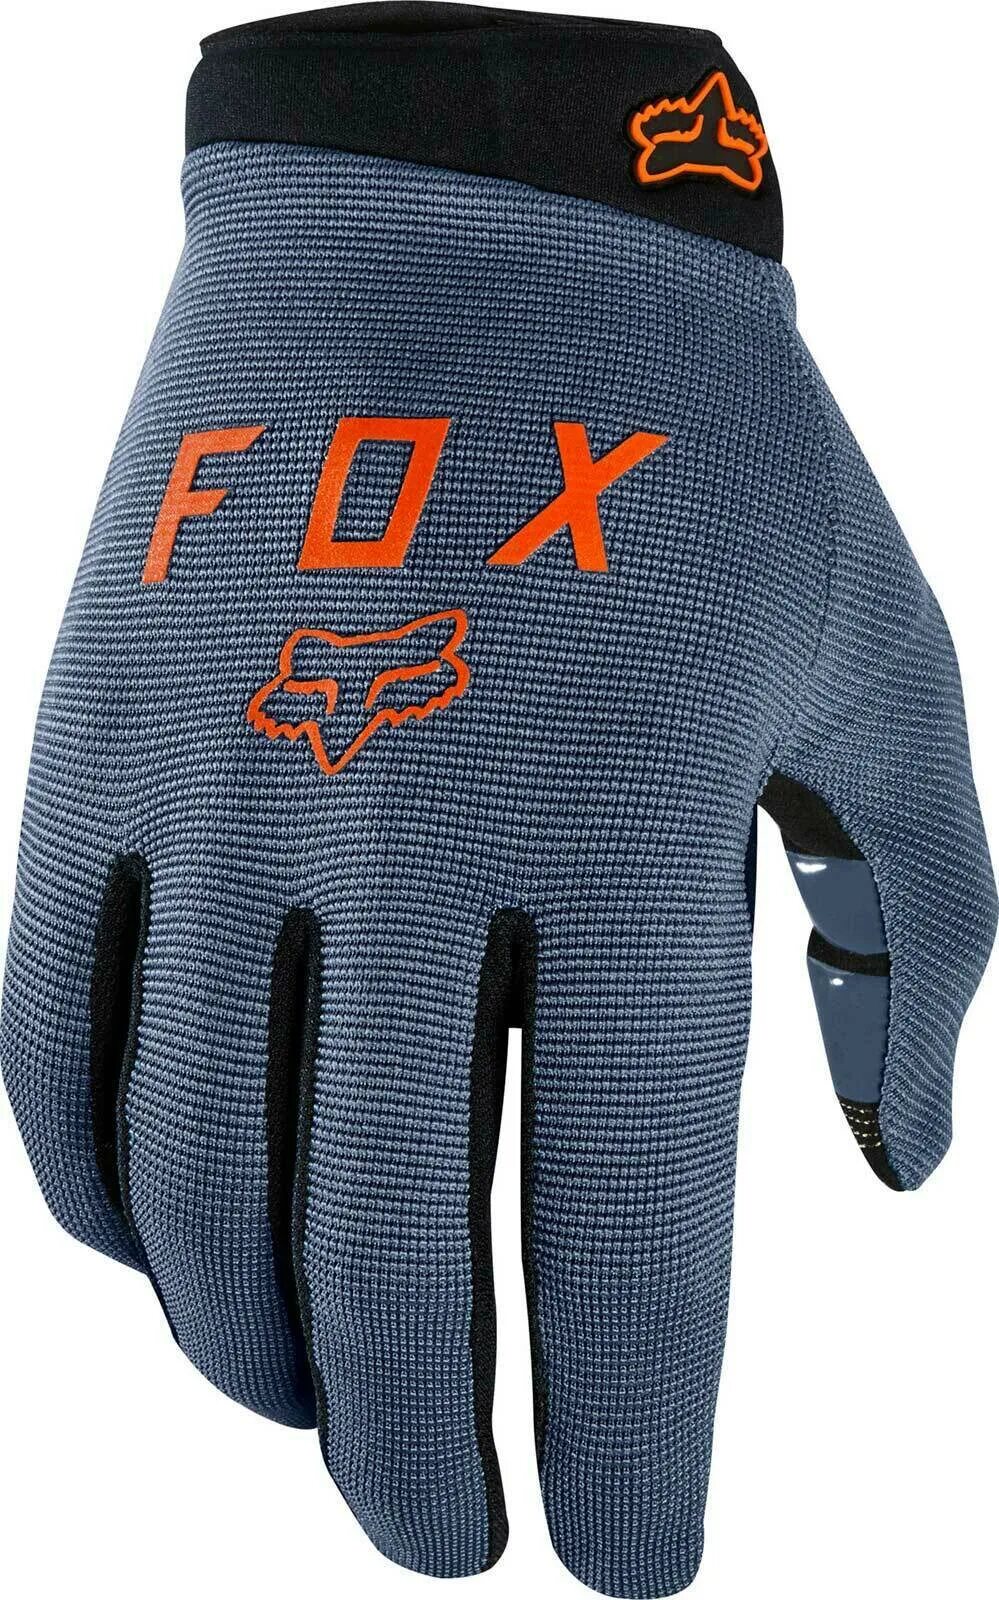 Перчатки Fox Ranger. Fox Racing велоперчатки. Перчатки Fox велосипедные. Перчатки для велосипеда Fox. Fox ranger